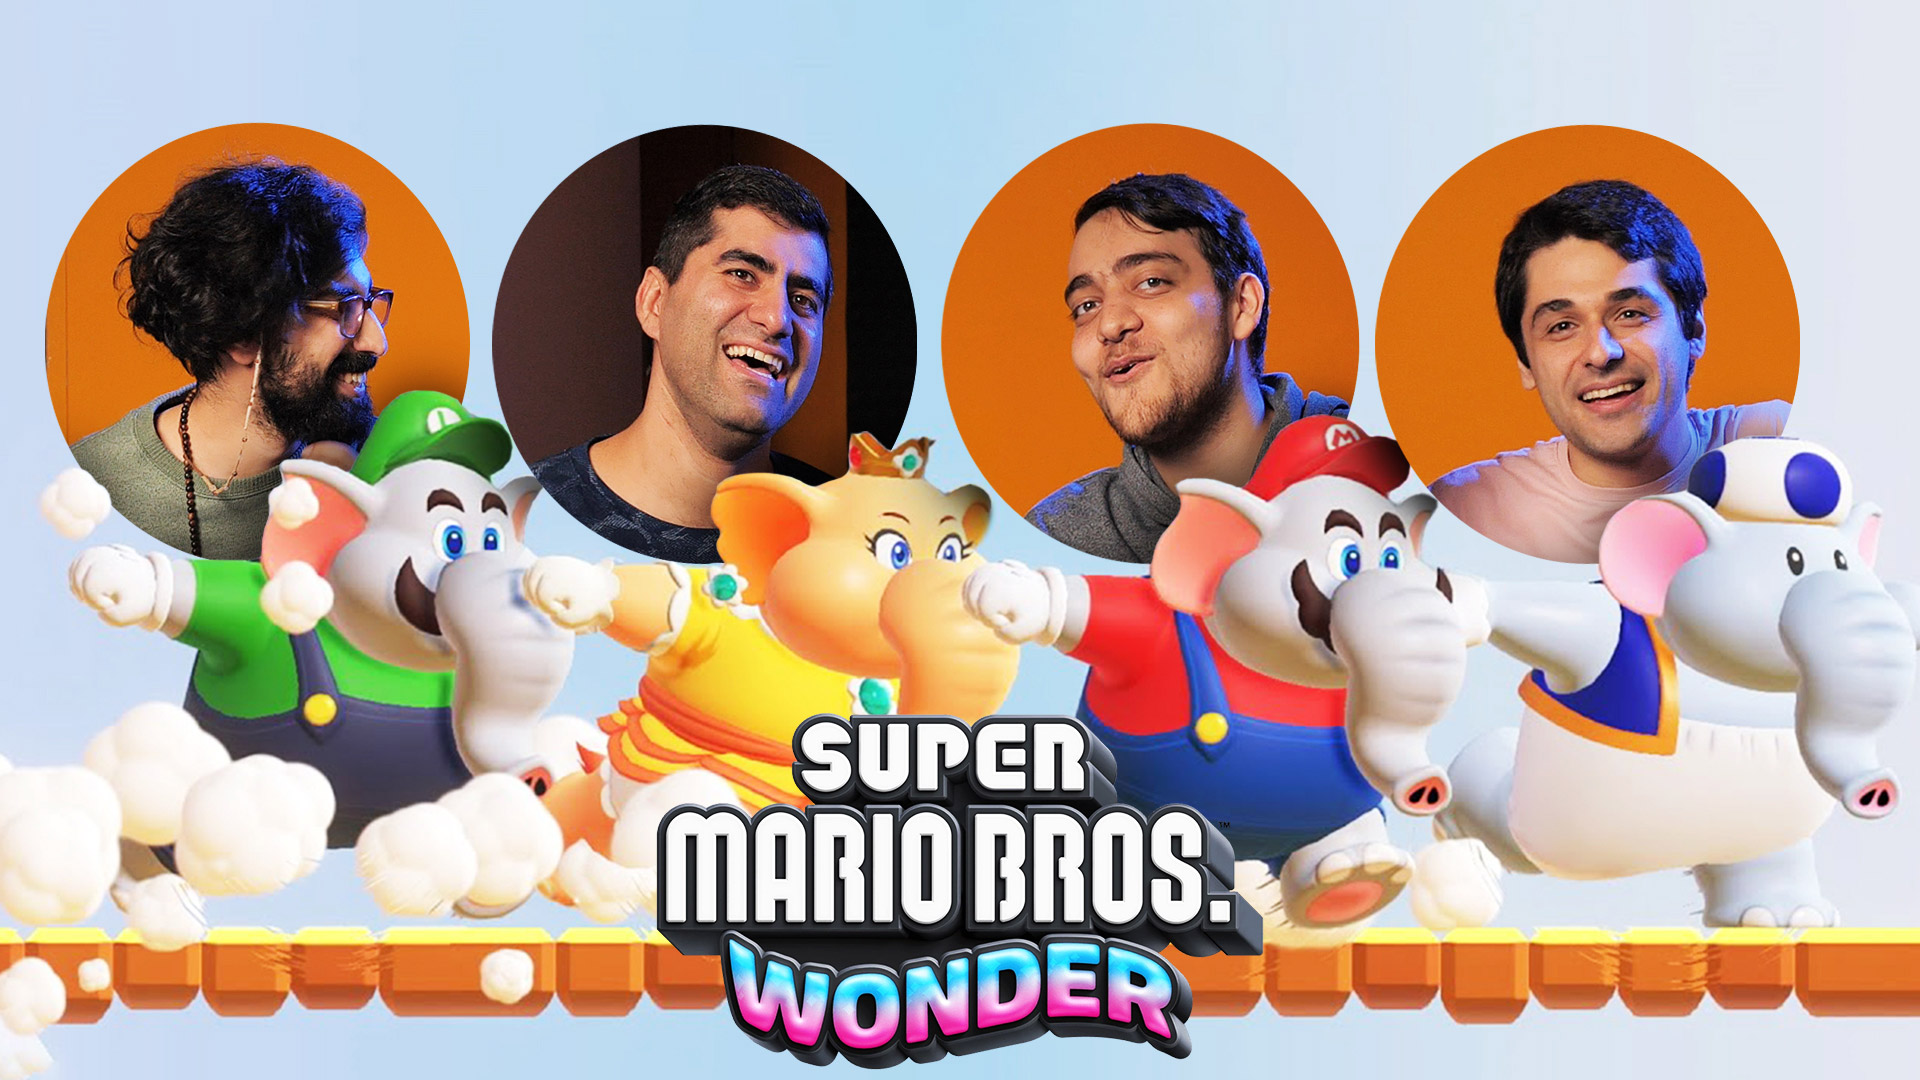 نیم نگاه چندنفره ماریو جدید | بازی Super Mario Bros. Wonder